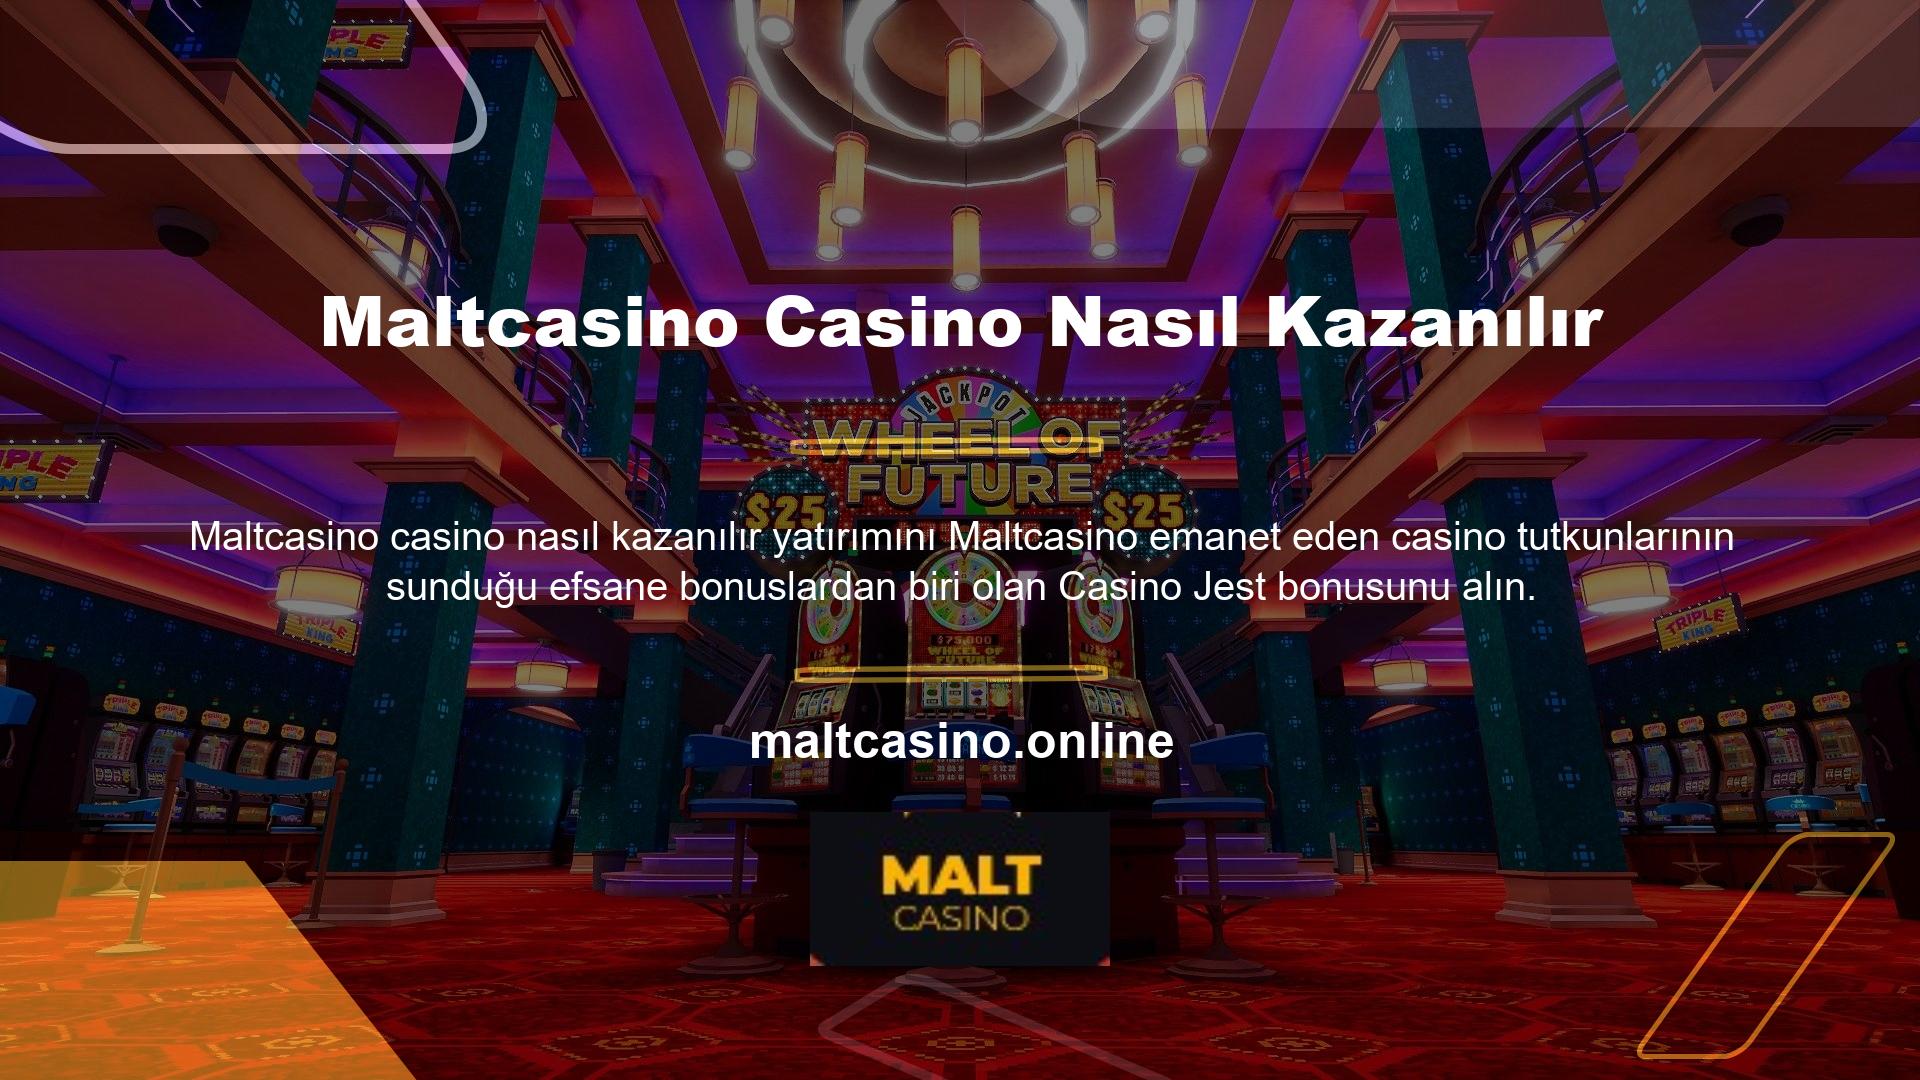 Maltcasino, sadece casino jest bonusu değil, herhangi bir bonus, çevrimiçi yardım hattımız aracılığıyla talep edildikten en fazla 10 dakika sonra üyelere dağıtılacaktır